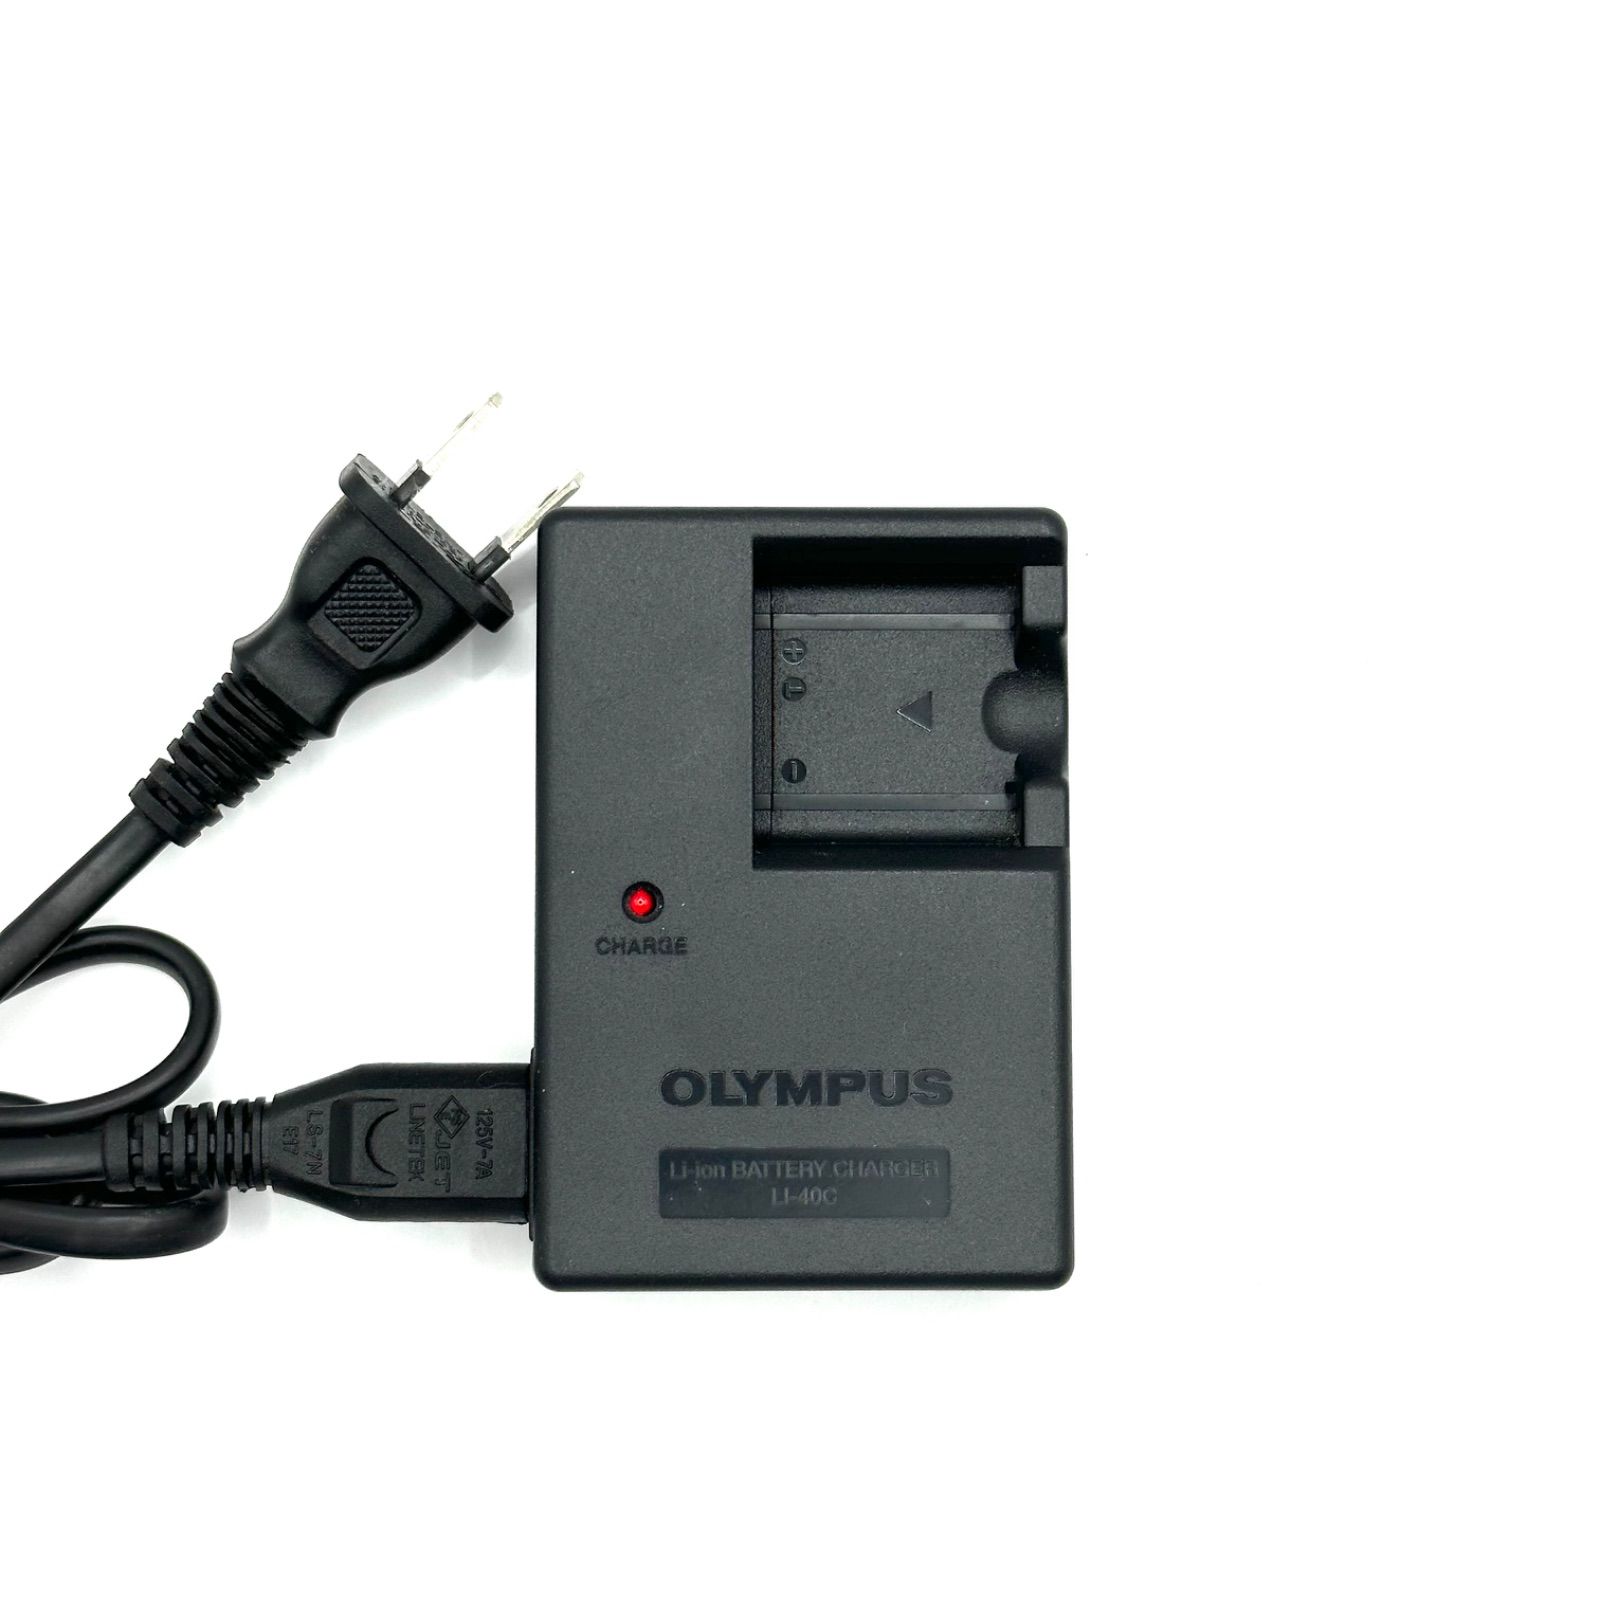 OLYMPUS LI-40C オリンパス 充電器 純正 チャージャー バッテリー 